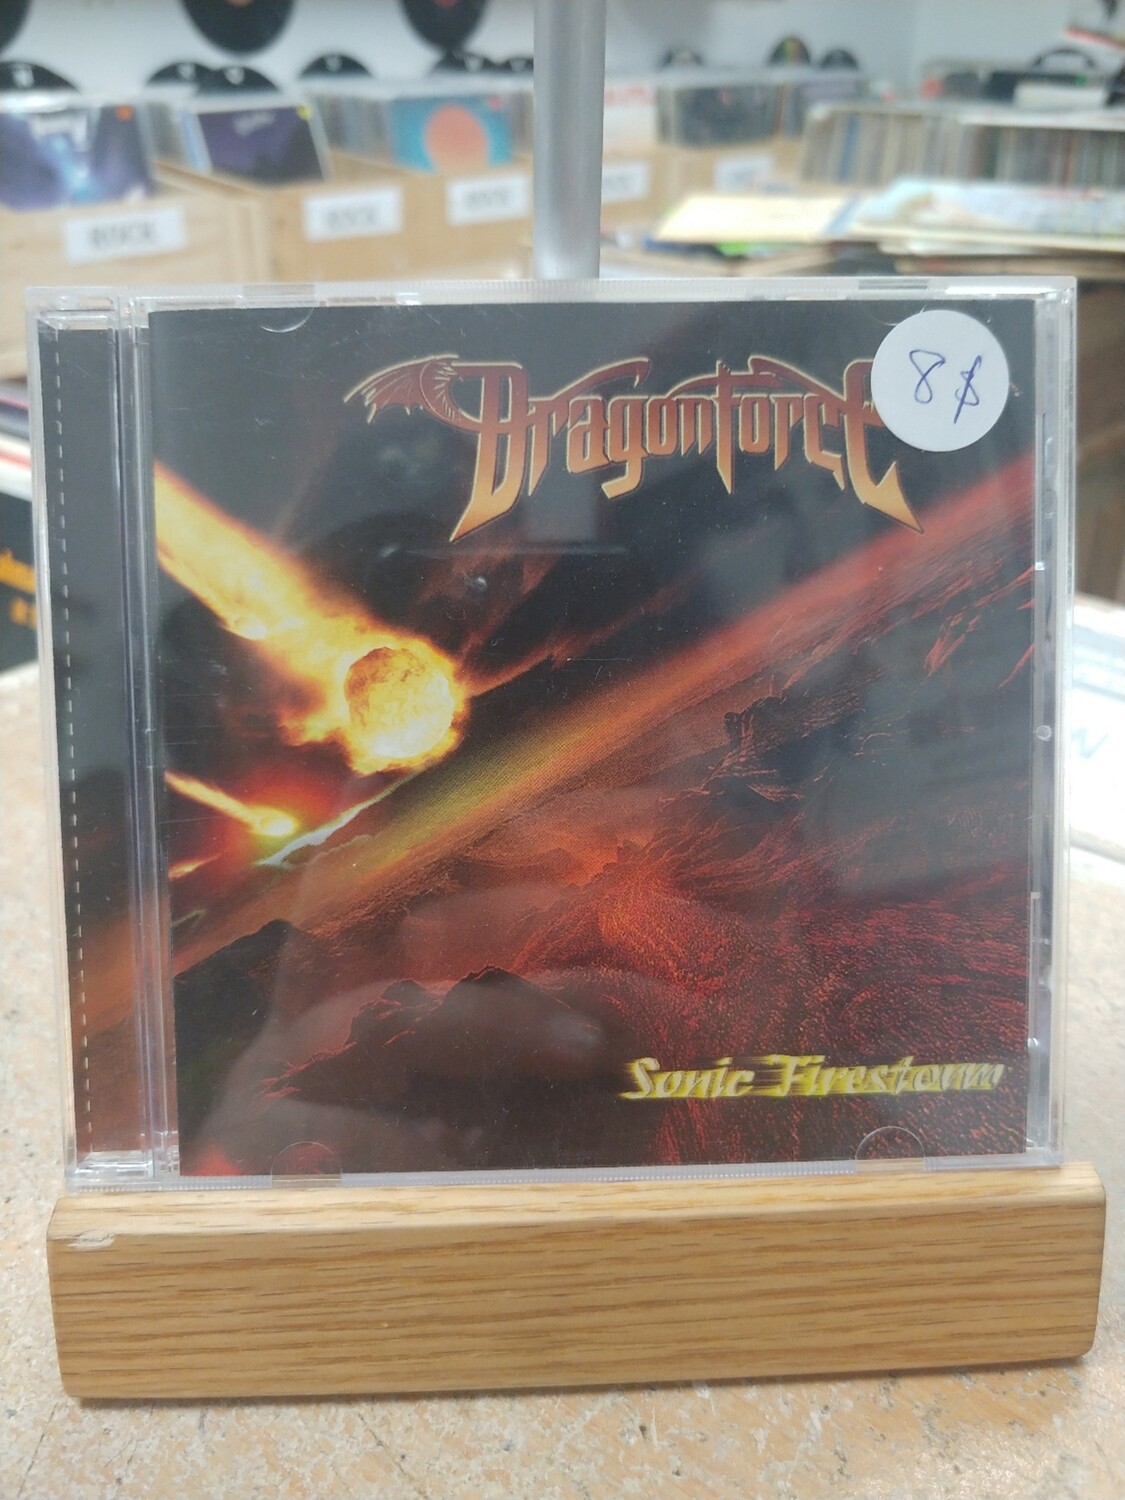 Dragonforce - Sonic Firestorm (CD)